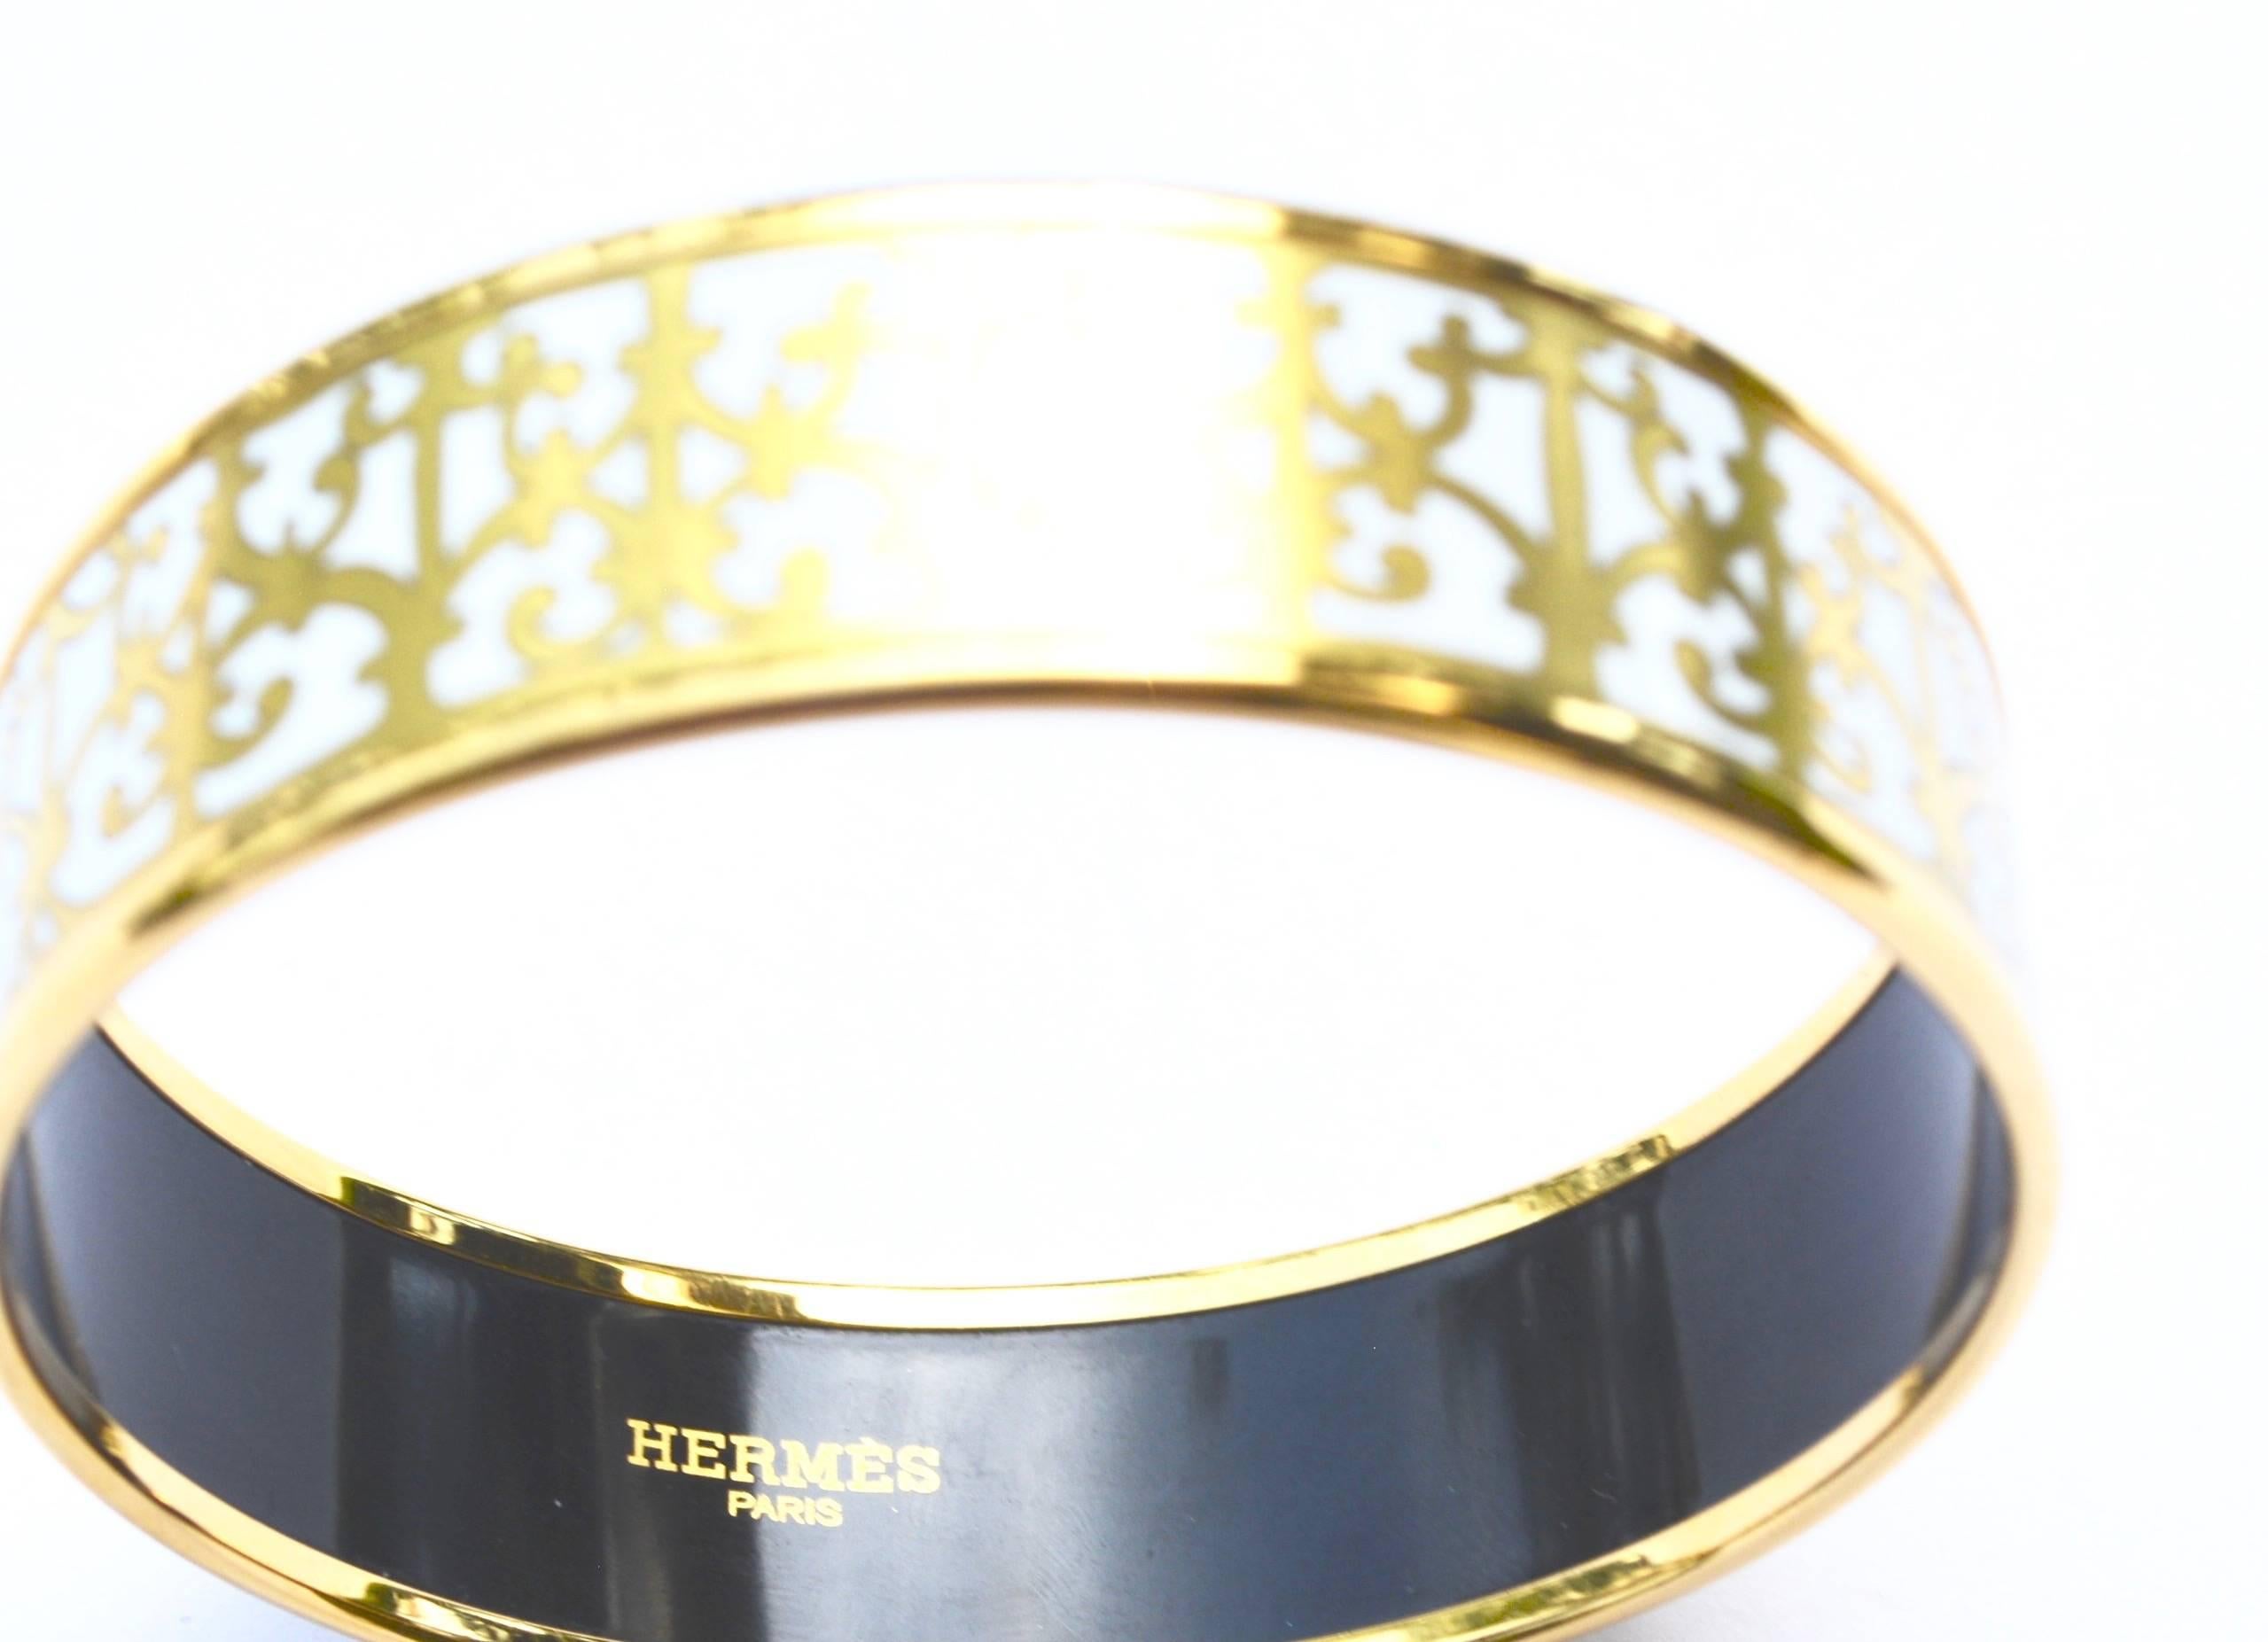 Hermes signed made in France enamel bracelet. Gilding and enamel is excellent. 7.5